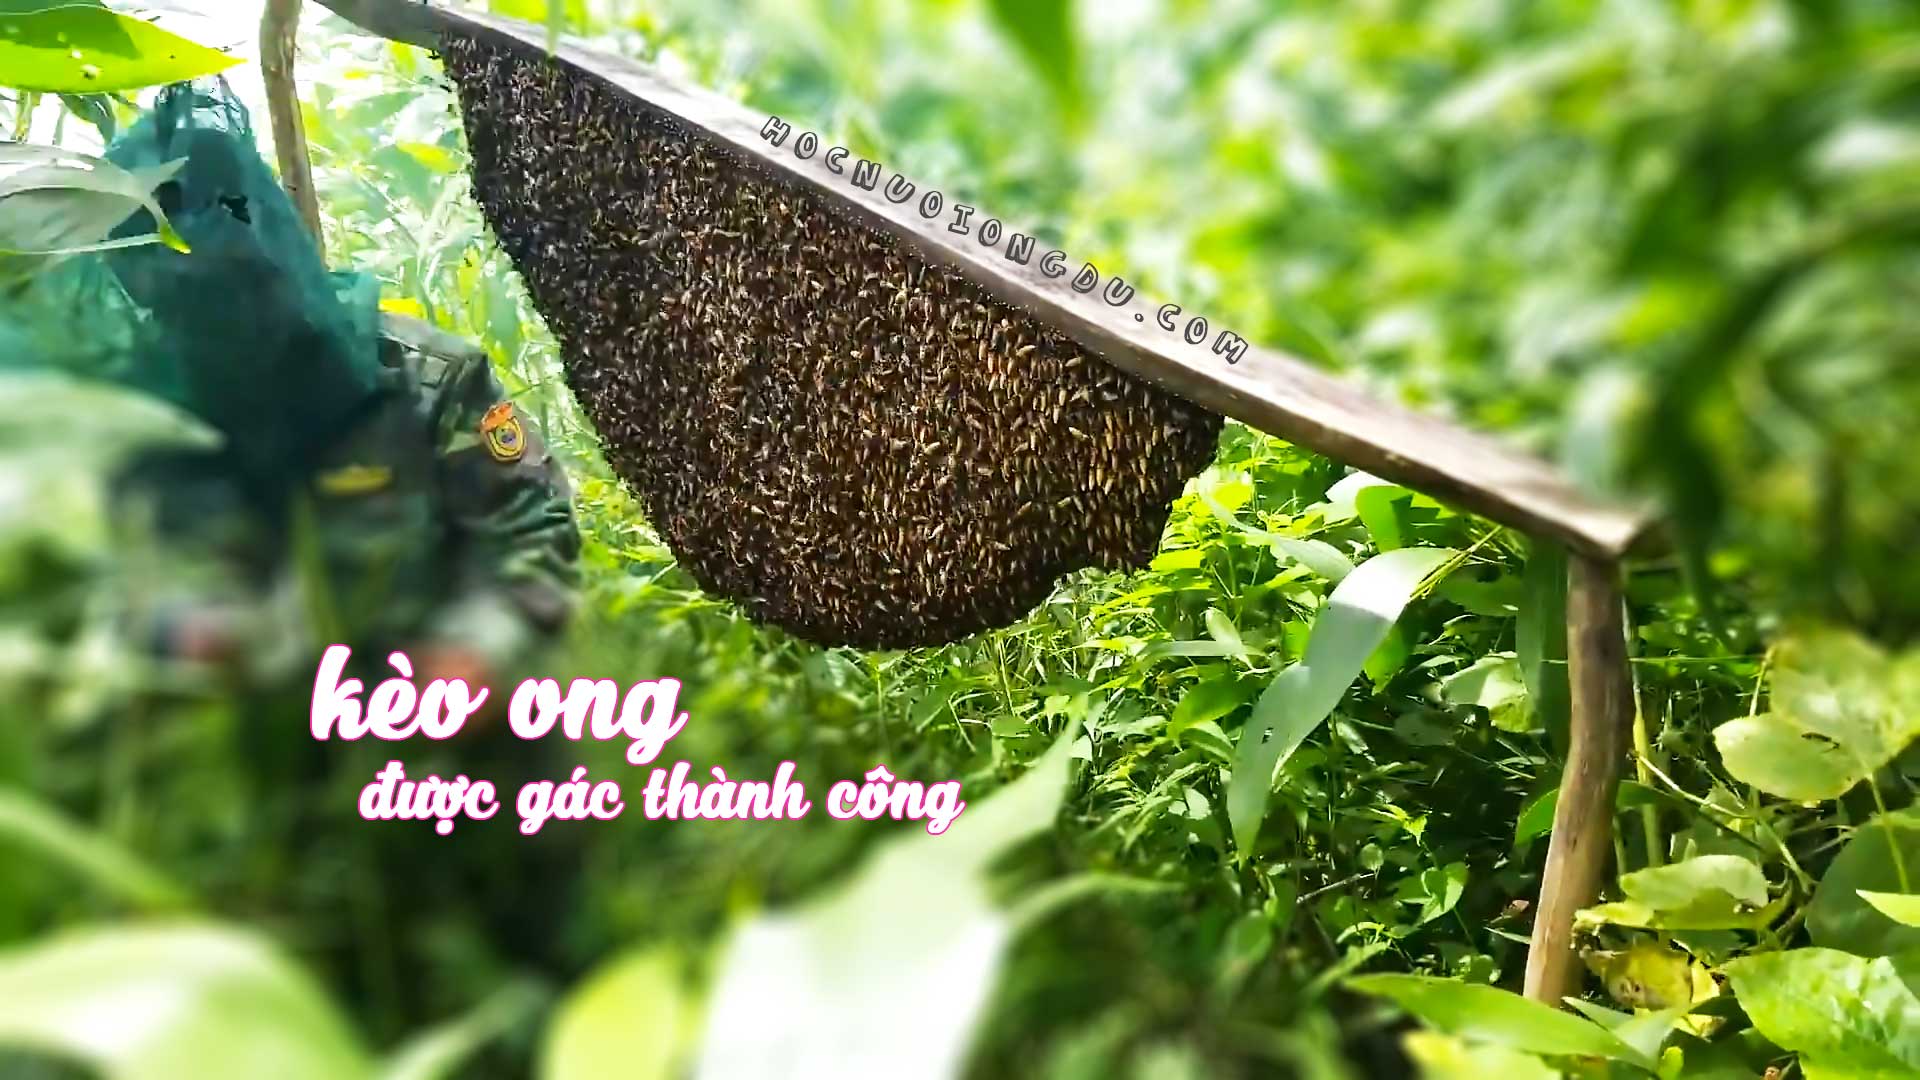 cây kèo ong, nghề gác kèo ong là gì?